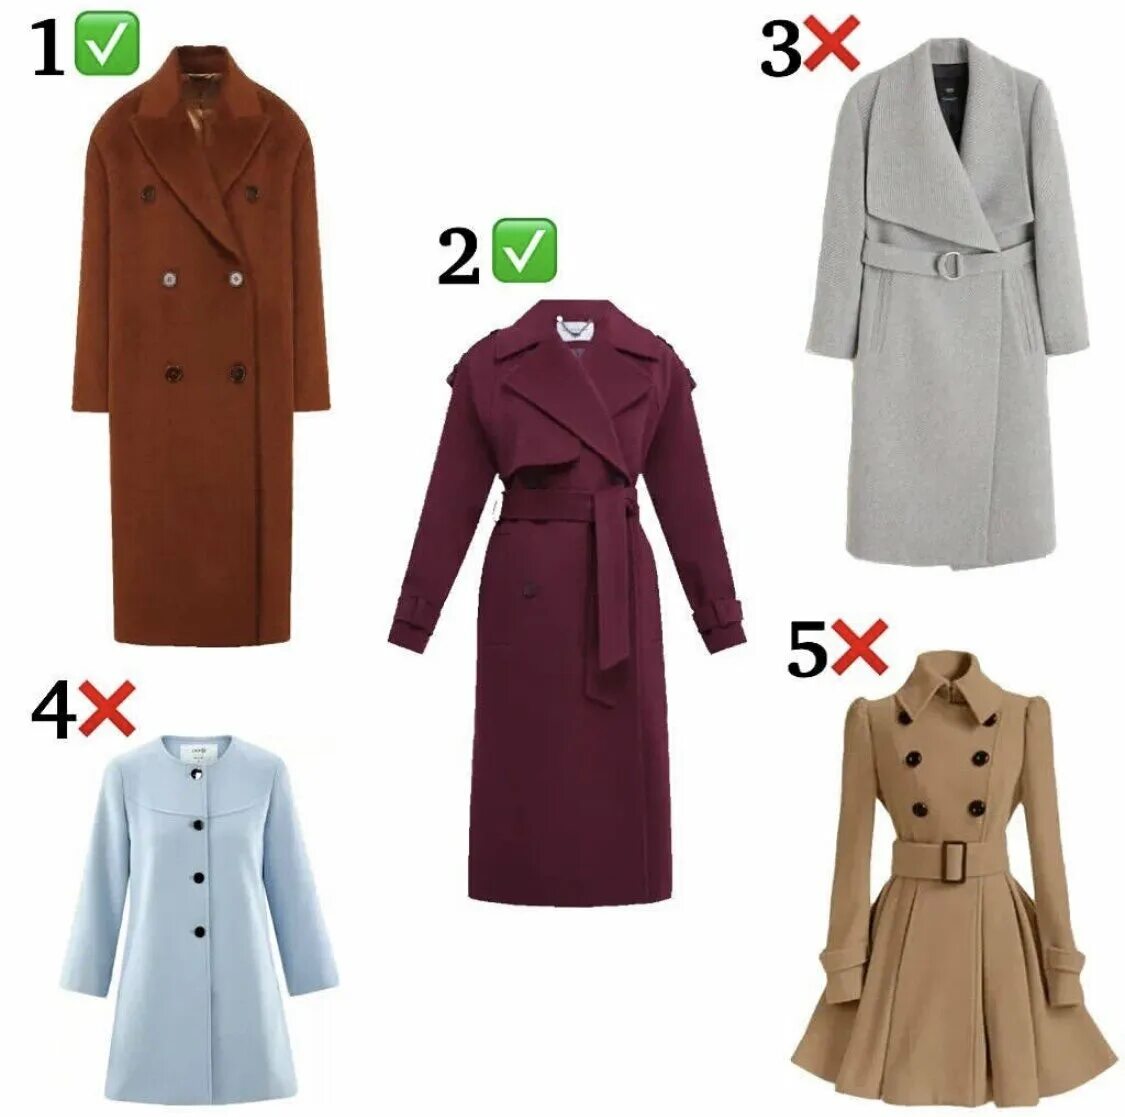 Пальто какой длины. Как выбрать пальто. Как правильно выбрать пальто. Длина пальто до середины бедра. Базовые пальто до середины бедра.